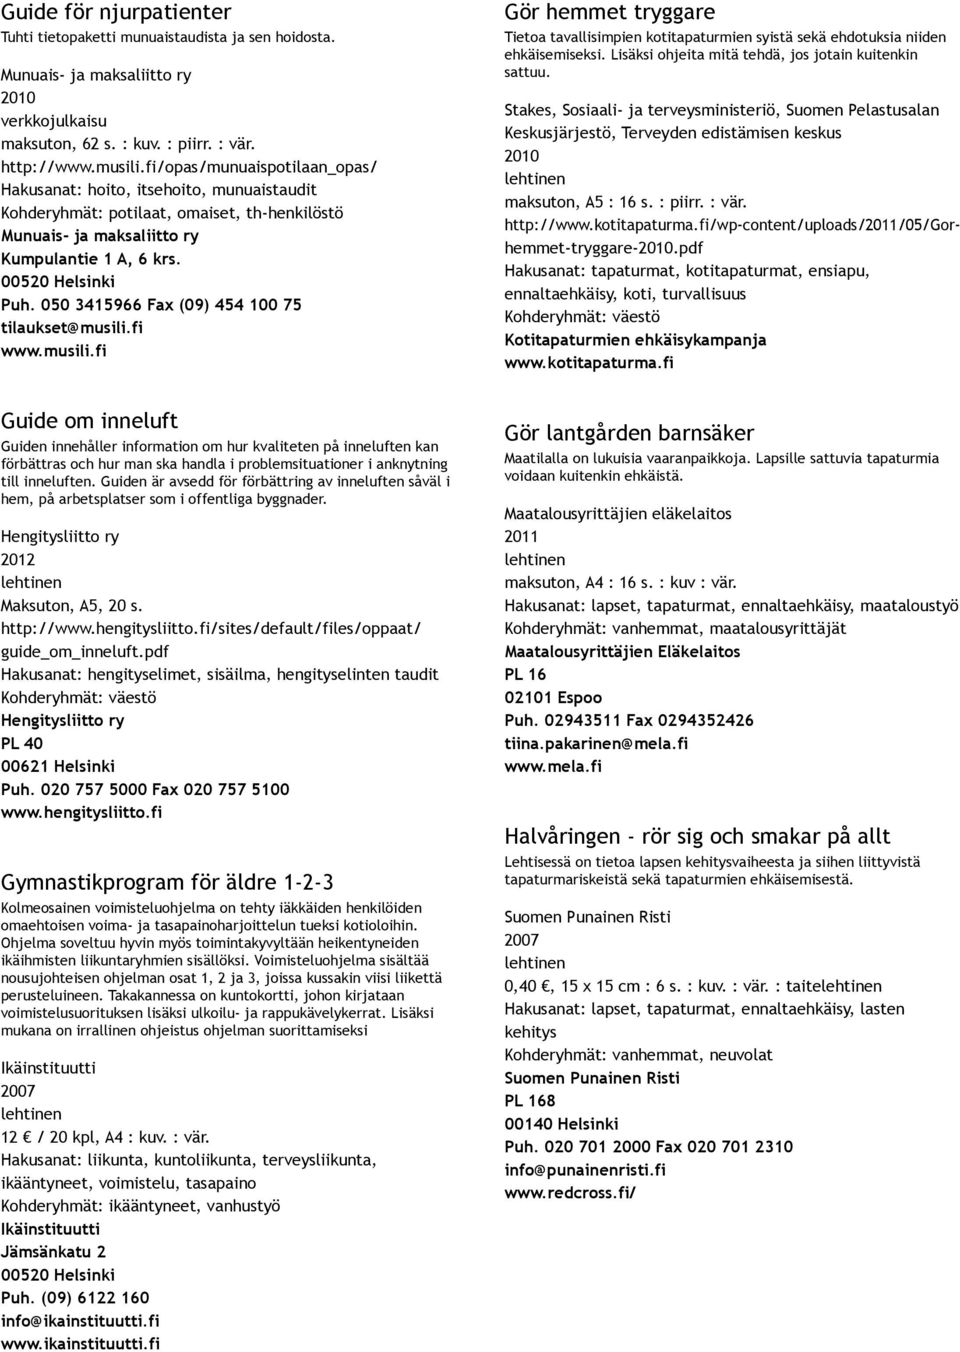 050 3415966 Fax (09) 454 100 75 tilaukset@musili.fi www.musili.fi Gör hemmet tryggare Tietoa tavallisimpien kotitapaturmien syistä sekä ehdotuksia niiden ehkäisemiseksi.